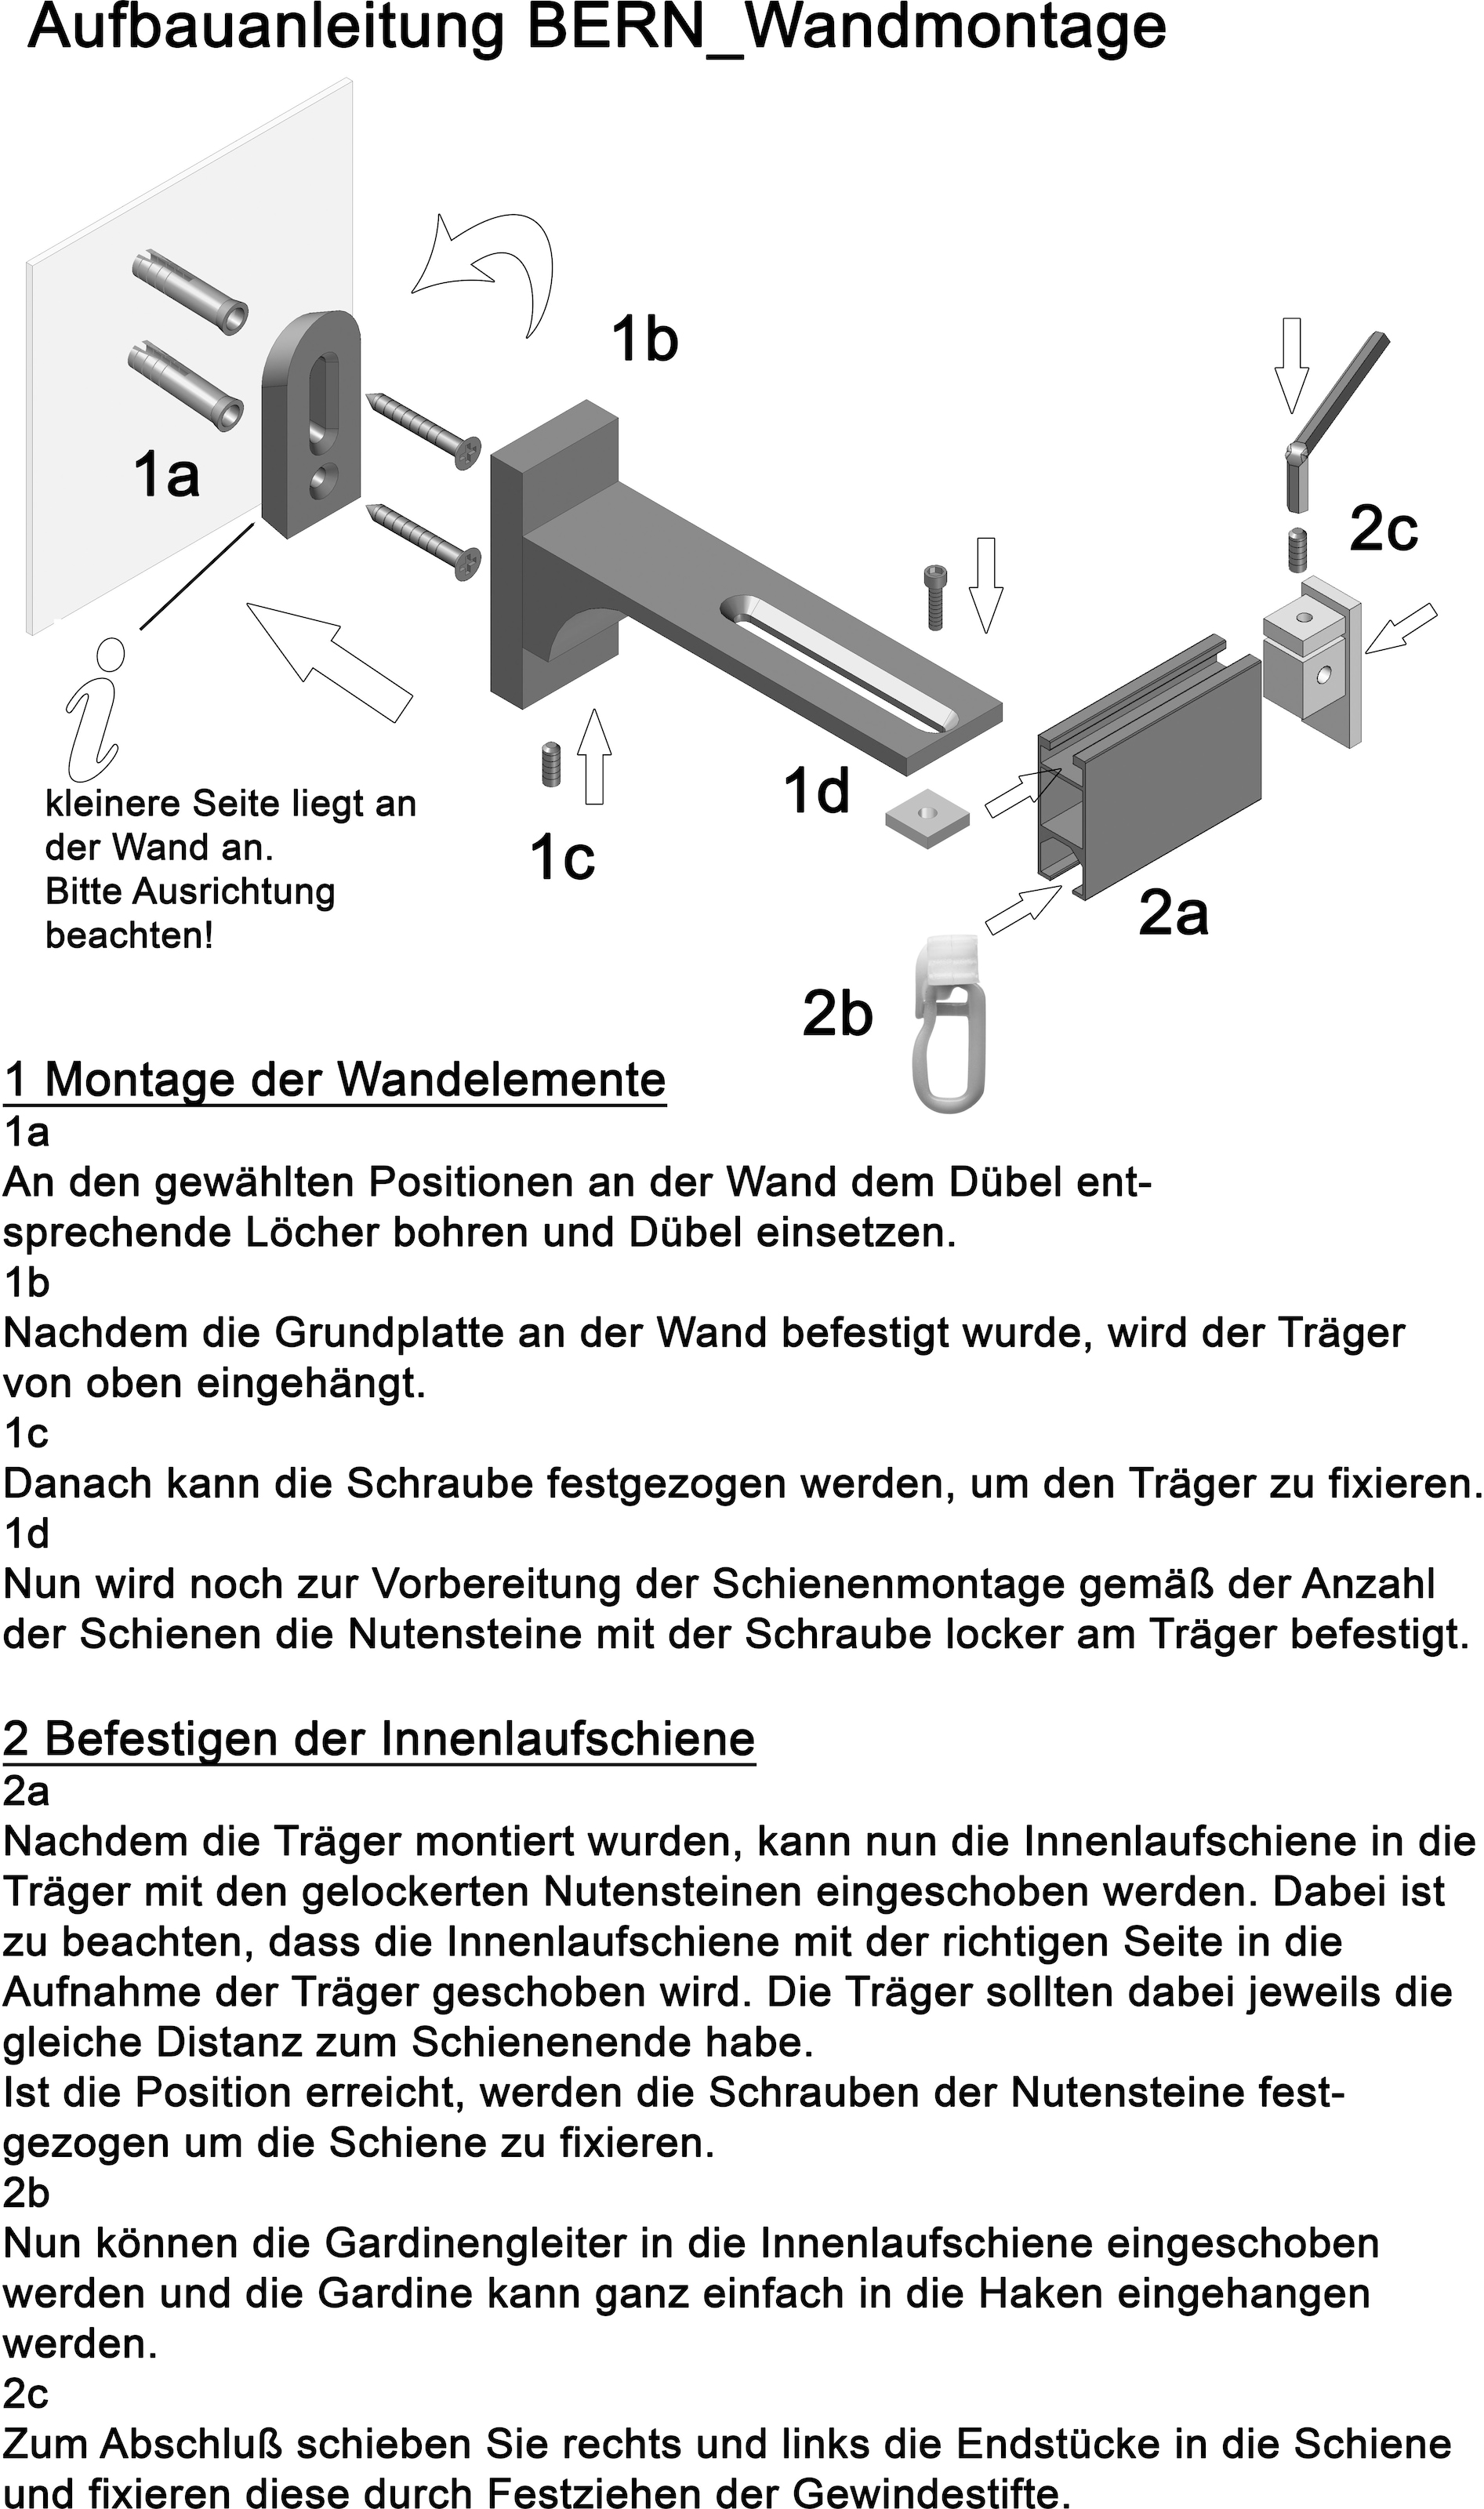 indeko Gardinenstange »Bern«, Wunschmaßlänge, 1 inkl. Montagematerial und läufig-läufig, Gleitern Innenlauf Komplett-Set